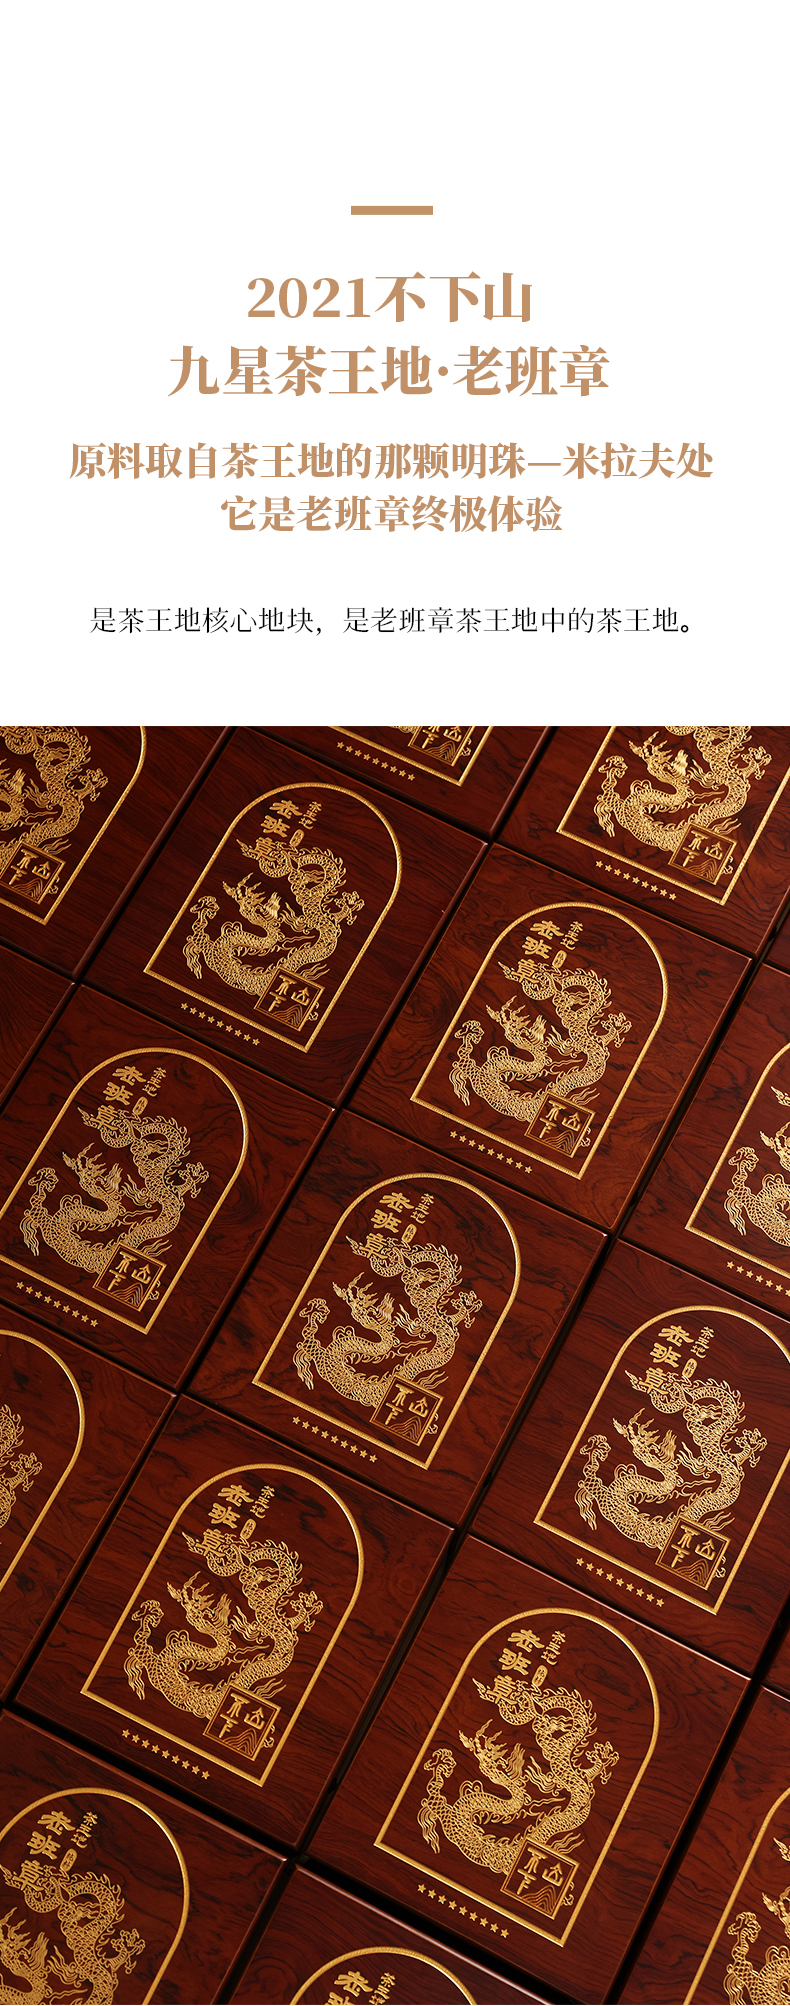 2021不下山·九星茶王地·老班章-普洱生茶散茶100g-详情页_09.jpg